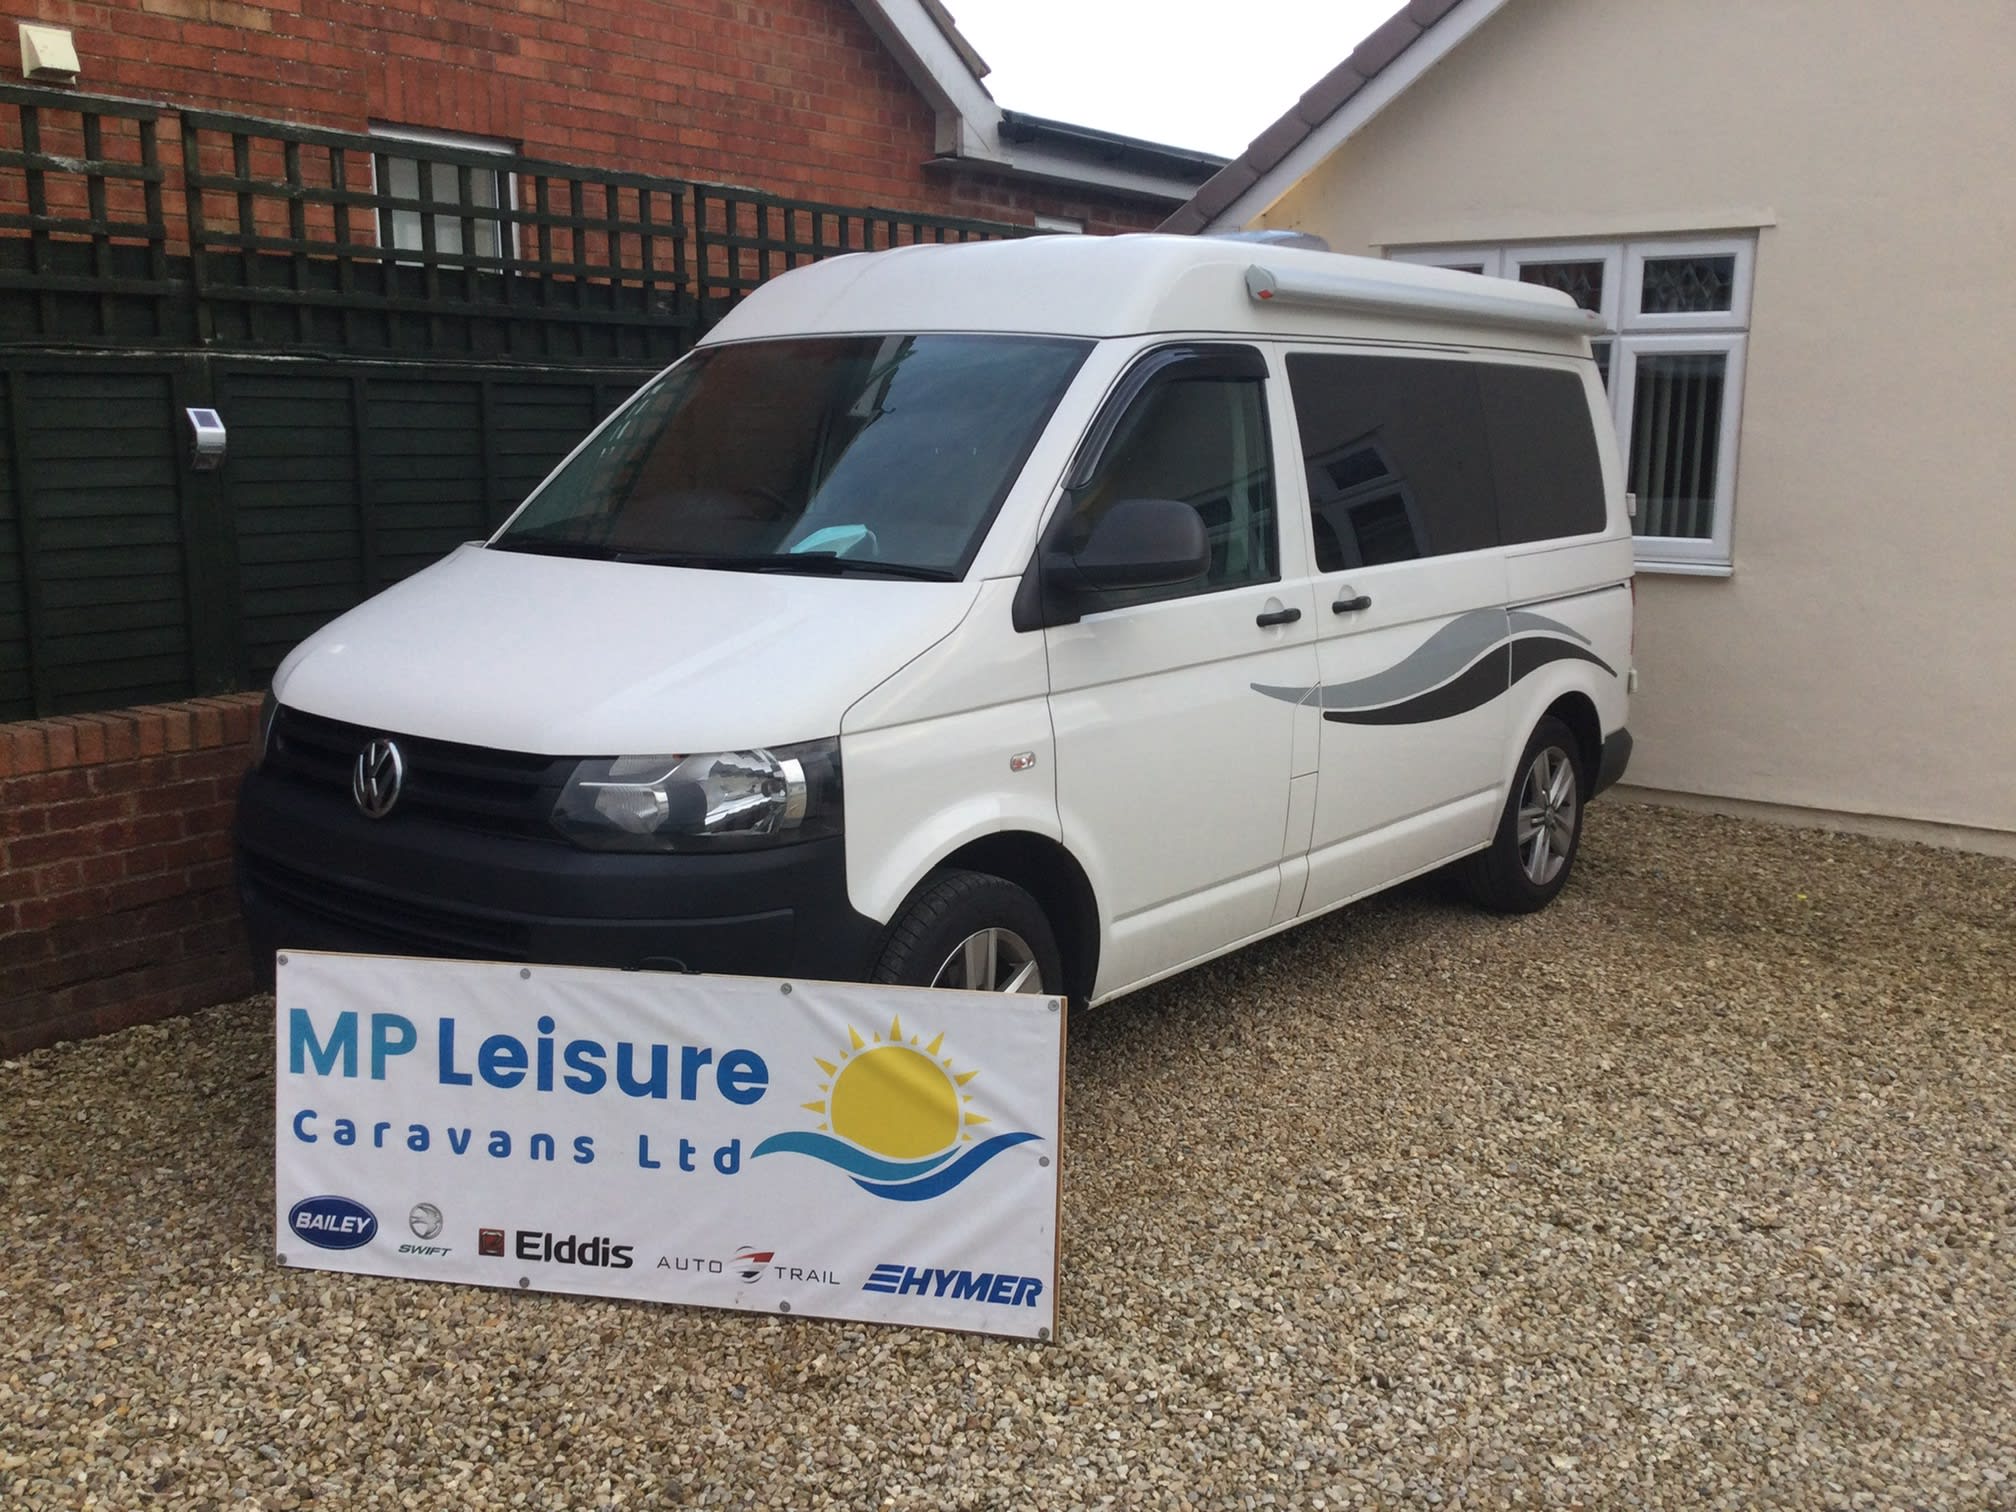 Images M P Leisure Caravans Ltd